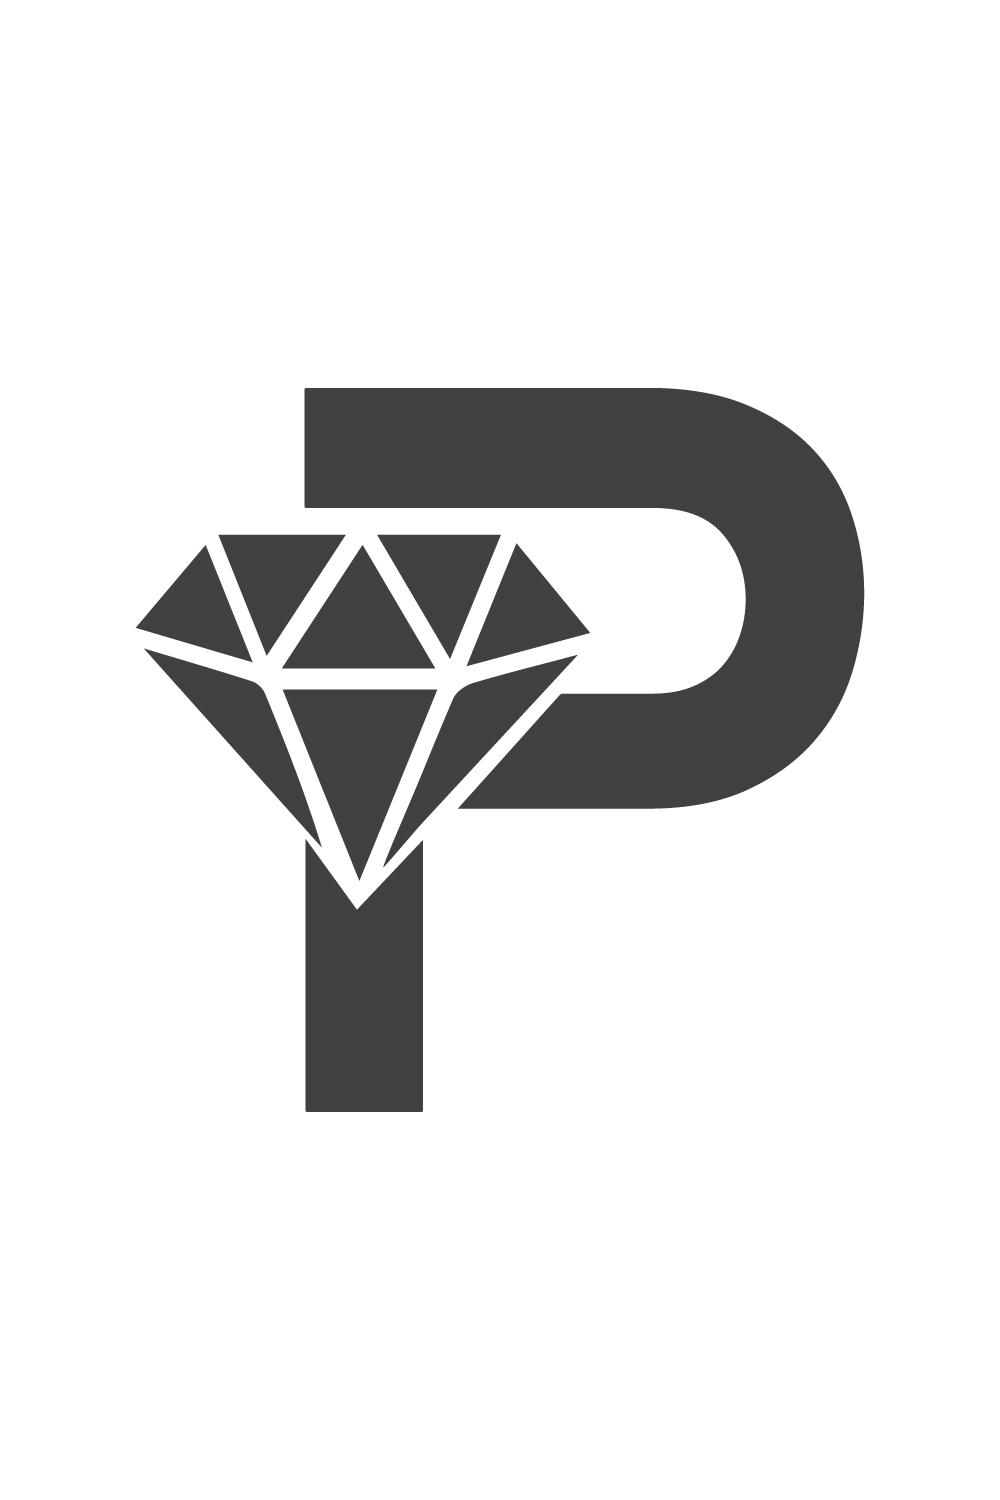 Luxury P letters logo design Premium vector images P diamond logo design P logo black color best identity pinterest preview image.